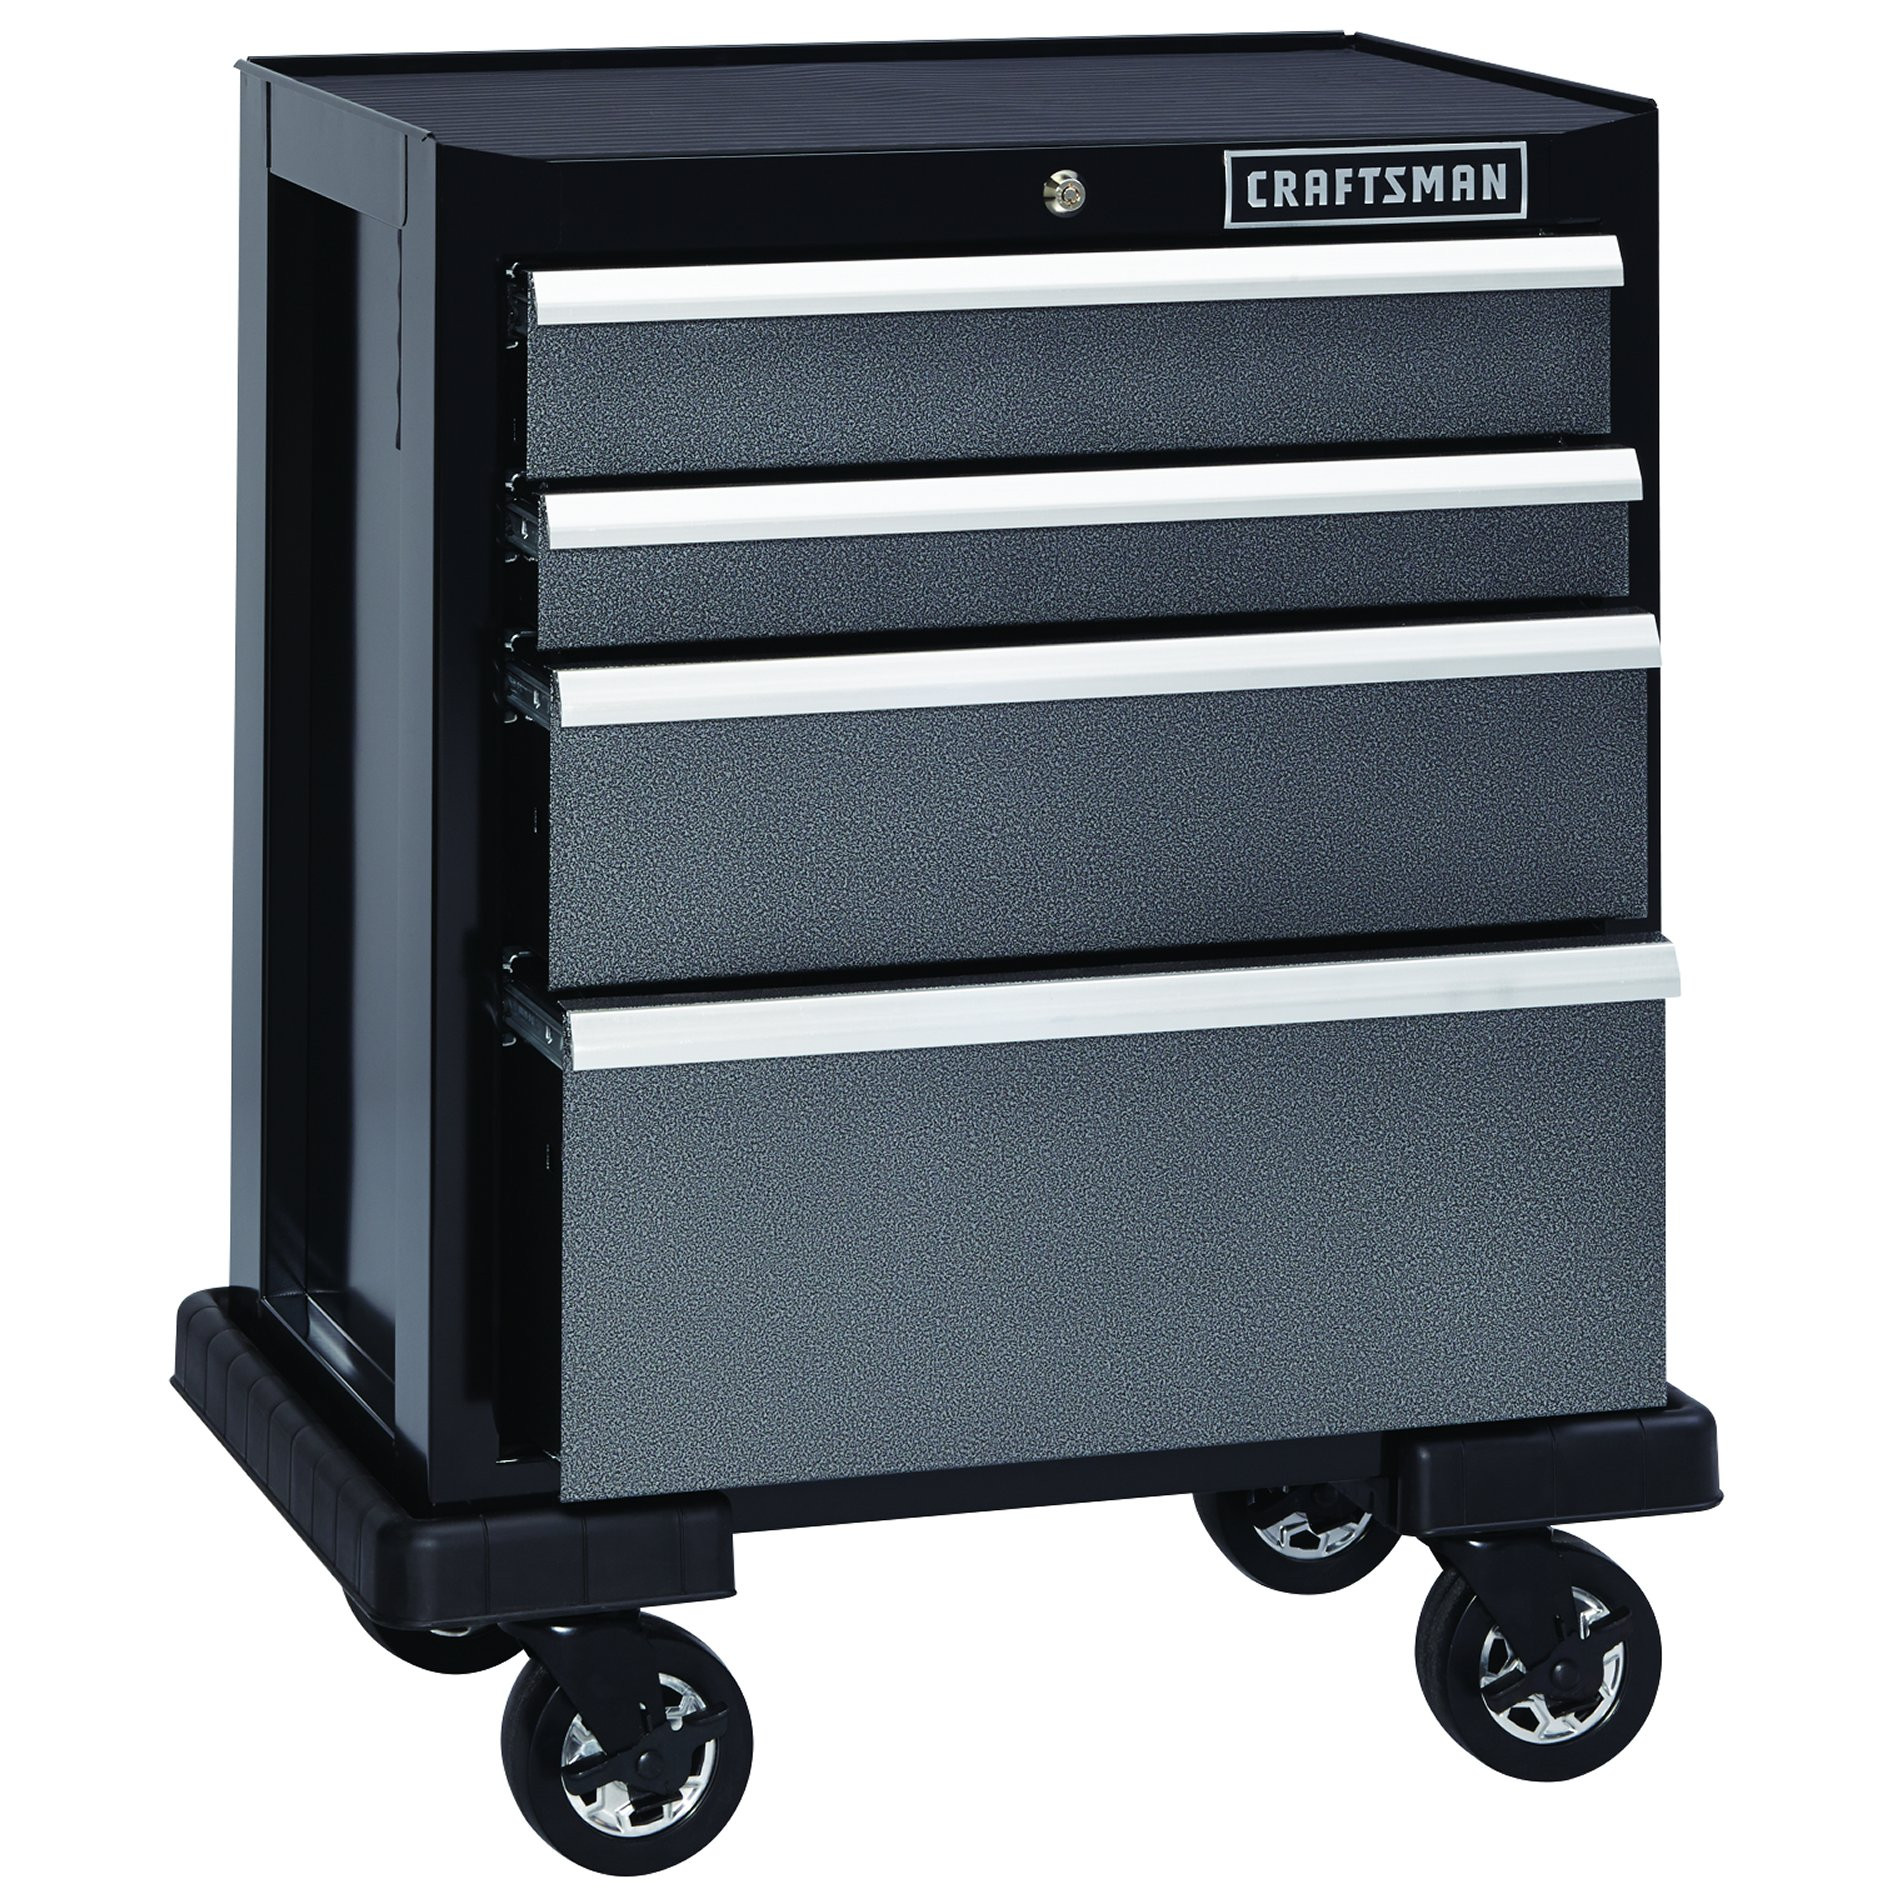 Craftsman Garage Organization
 Craftsman Premium Heavy Duty 4 Drawer Base Cabinet